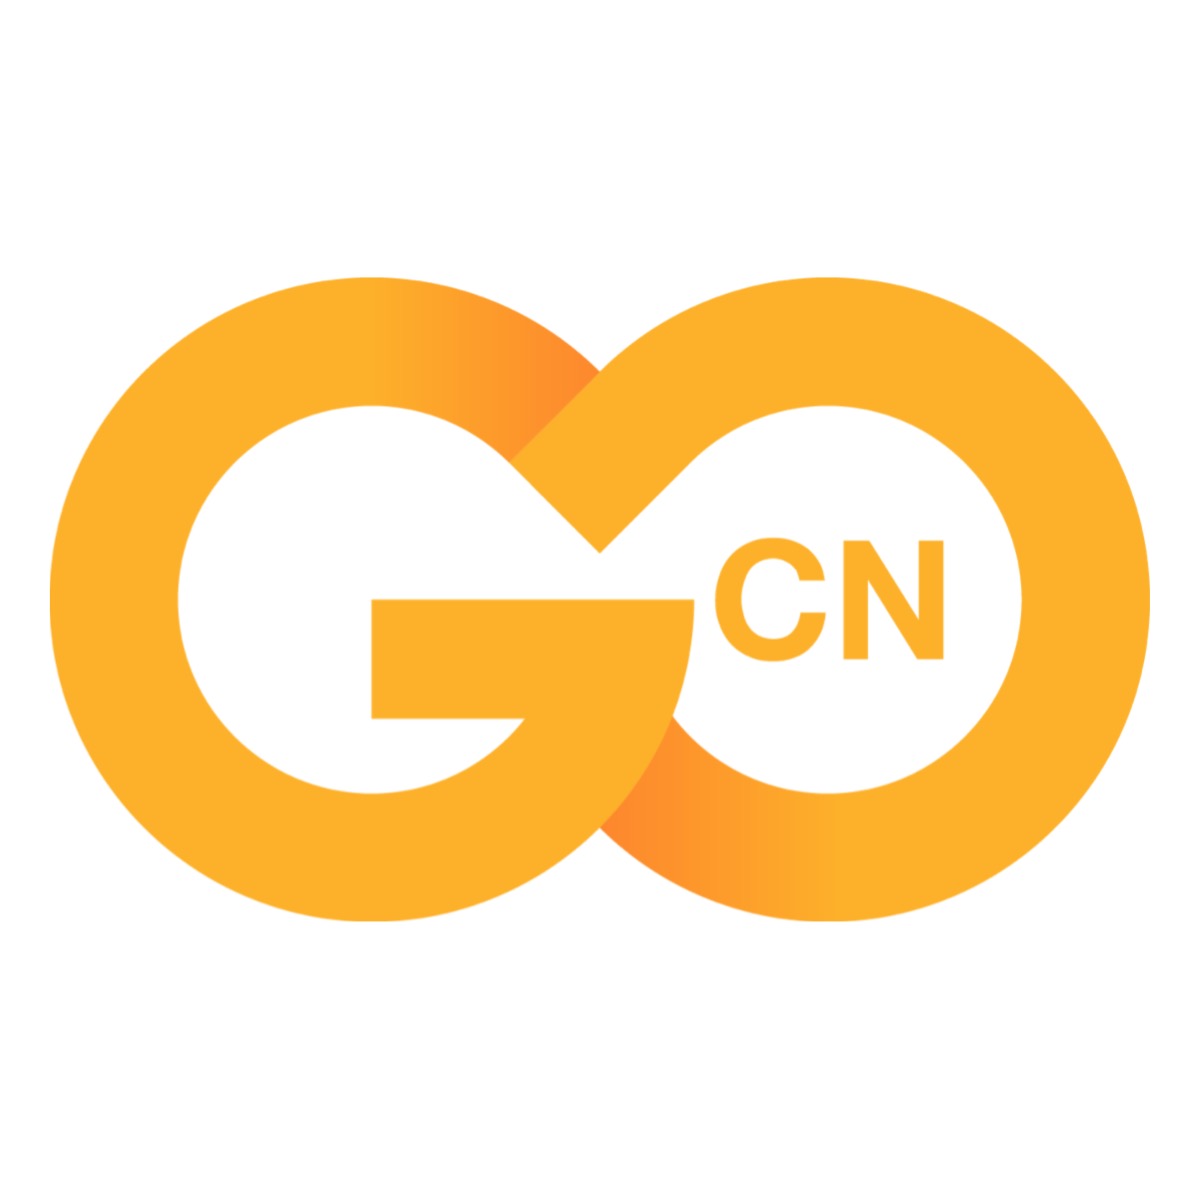 Go-CN